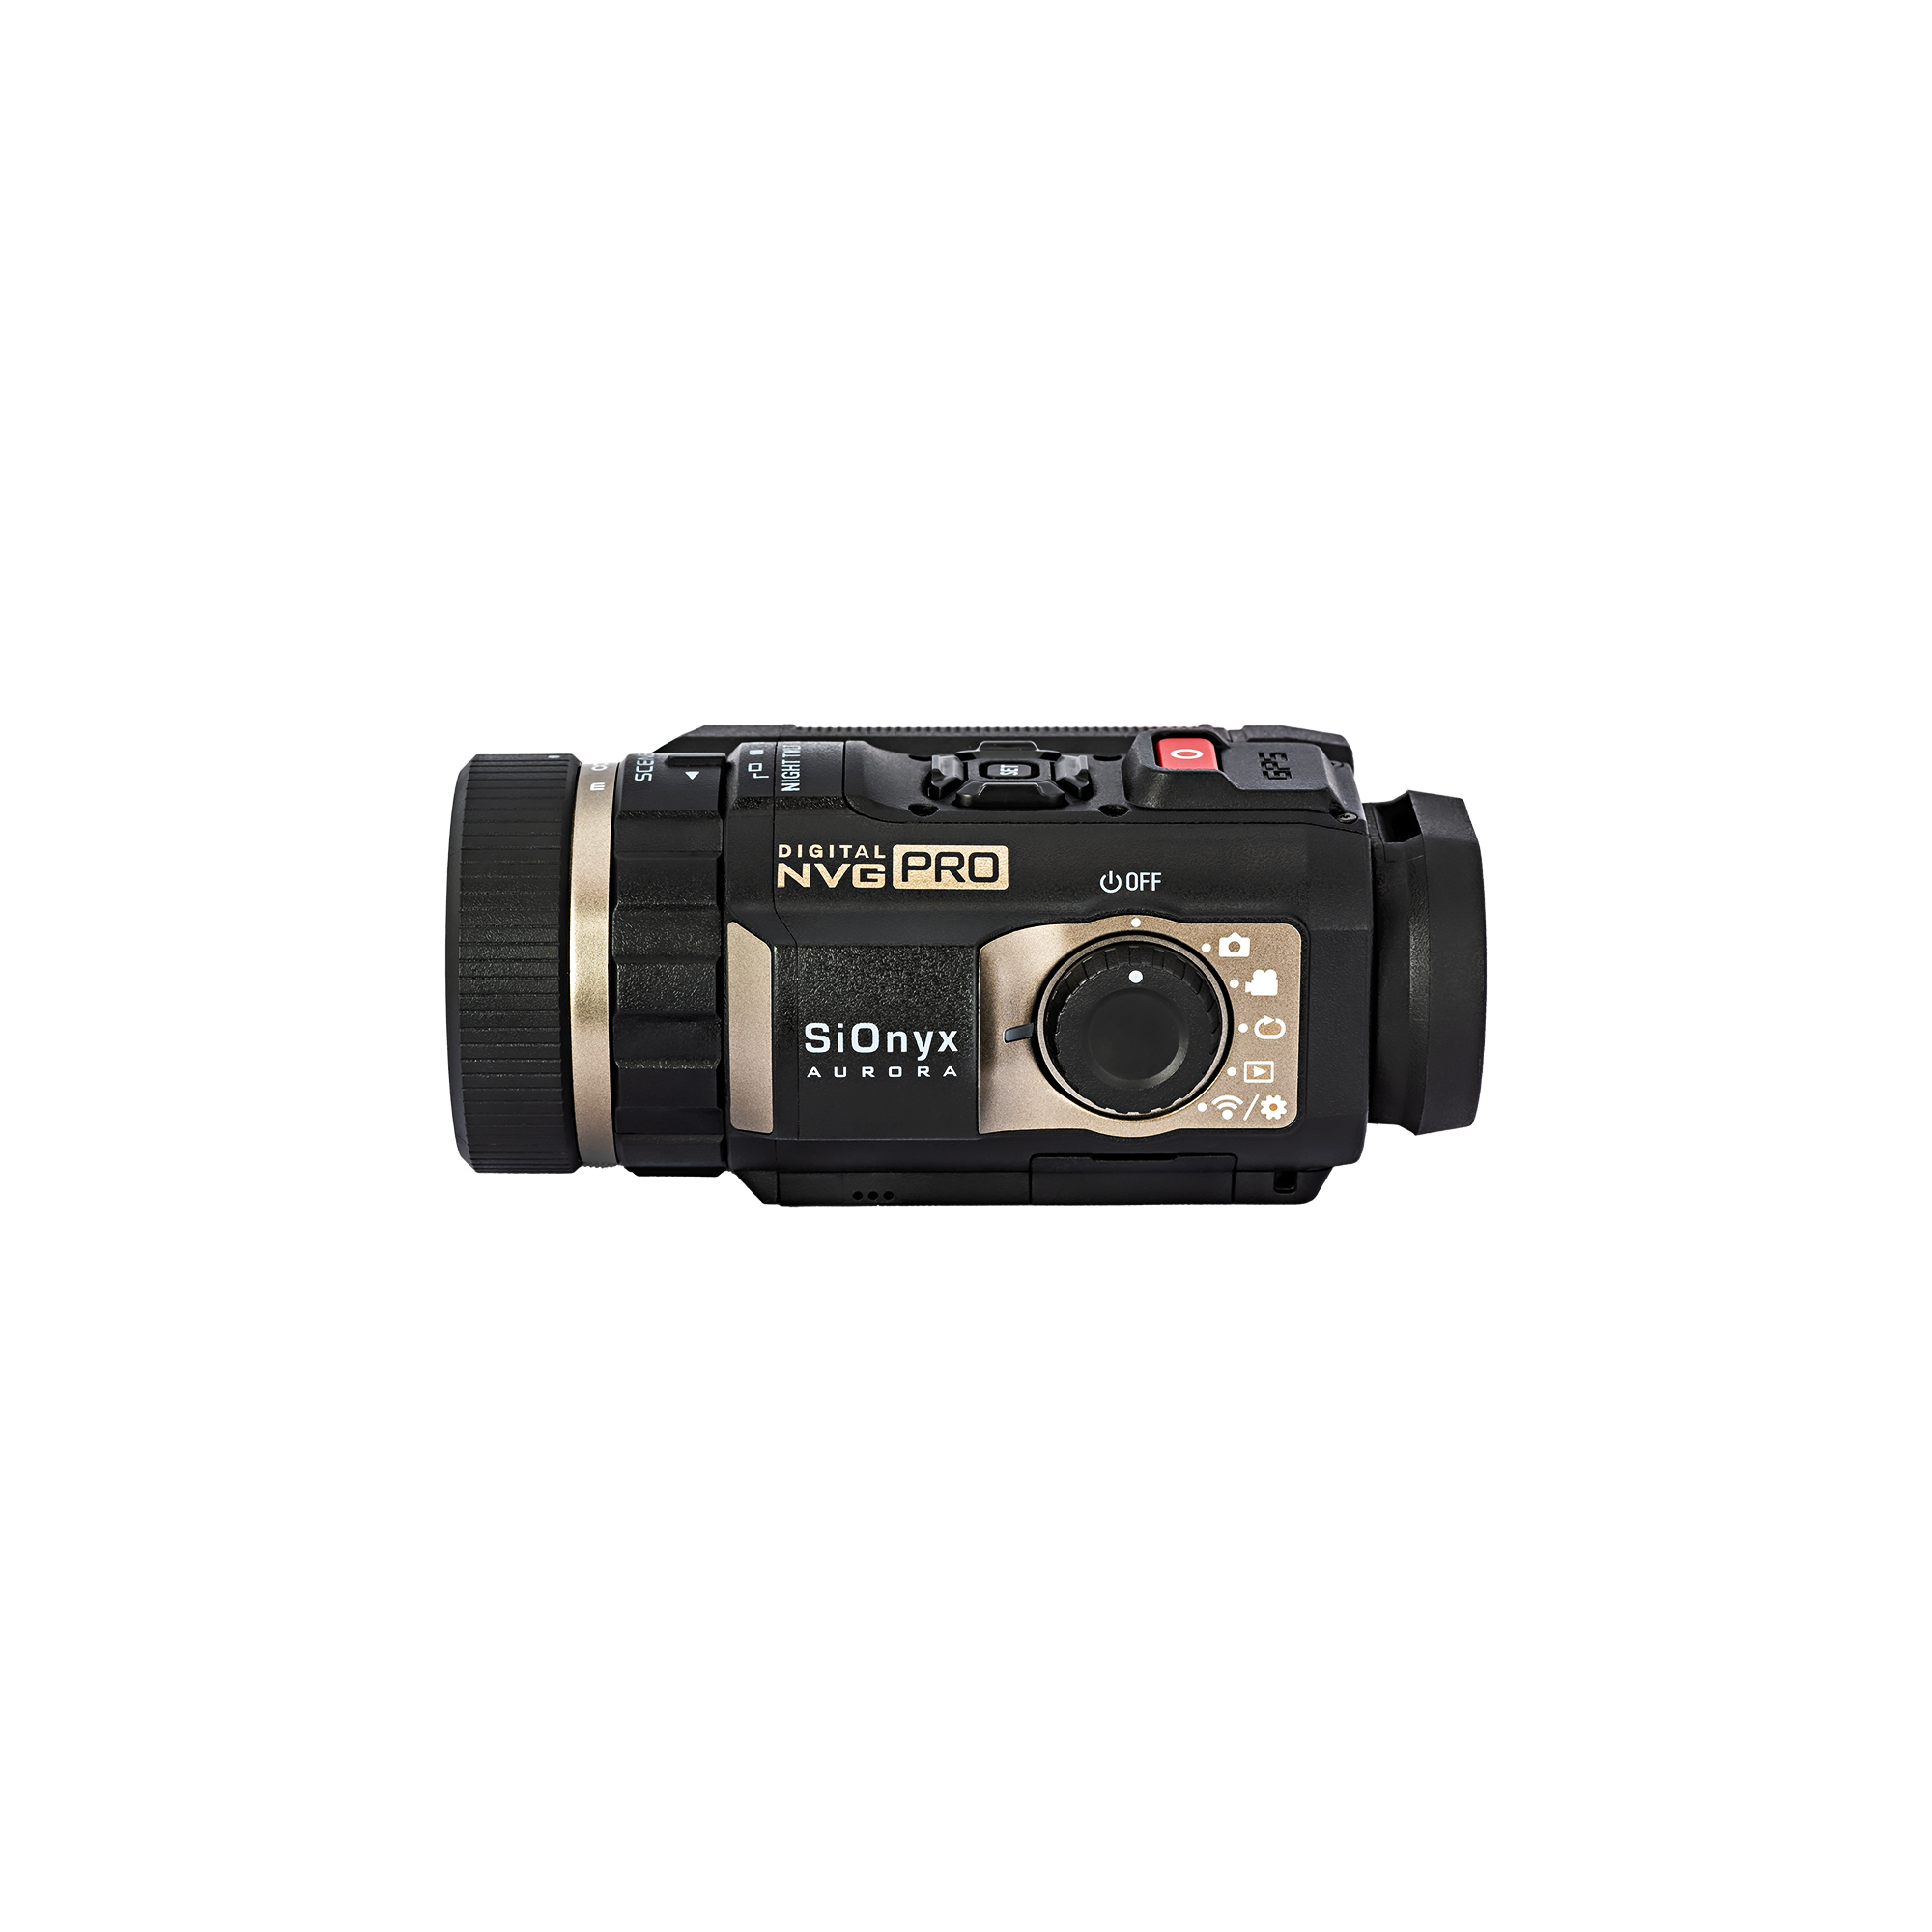 SIONYX Aurora PRO NVG 単眼 I カラー デジタル ナイト ビジョン カメラ